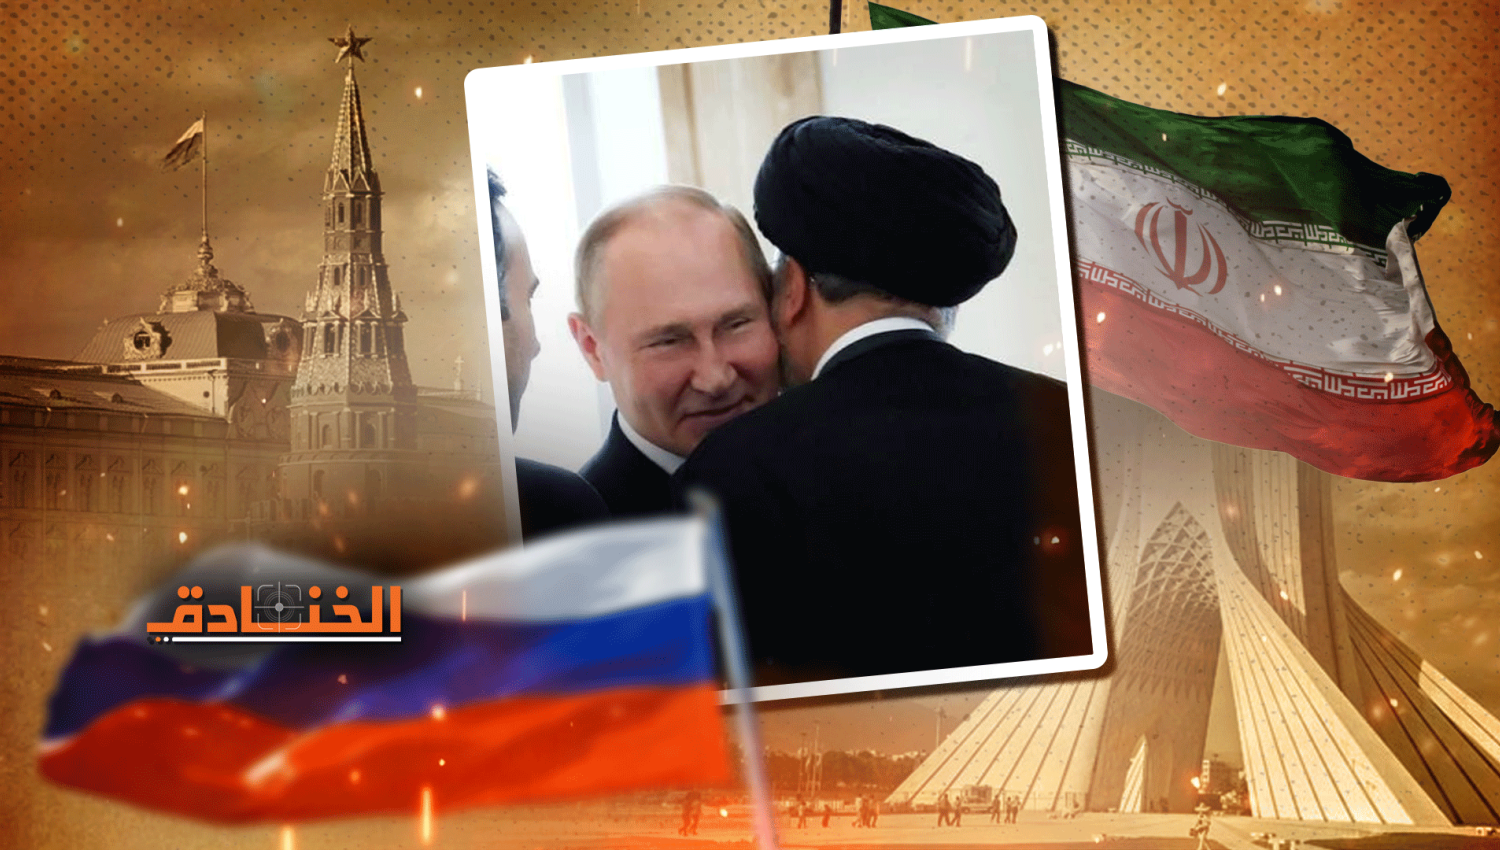 روسيا وإيران: تعزيز العلاقات الاستراتيجية في مختلف المجالات